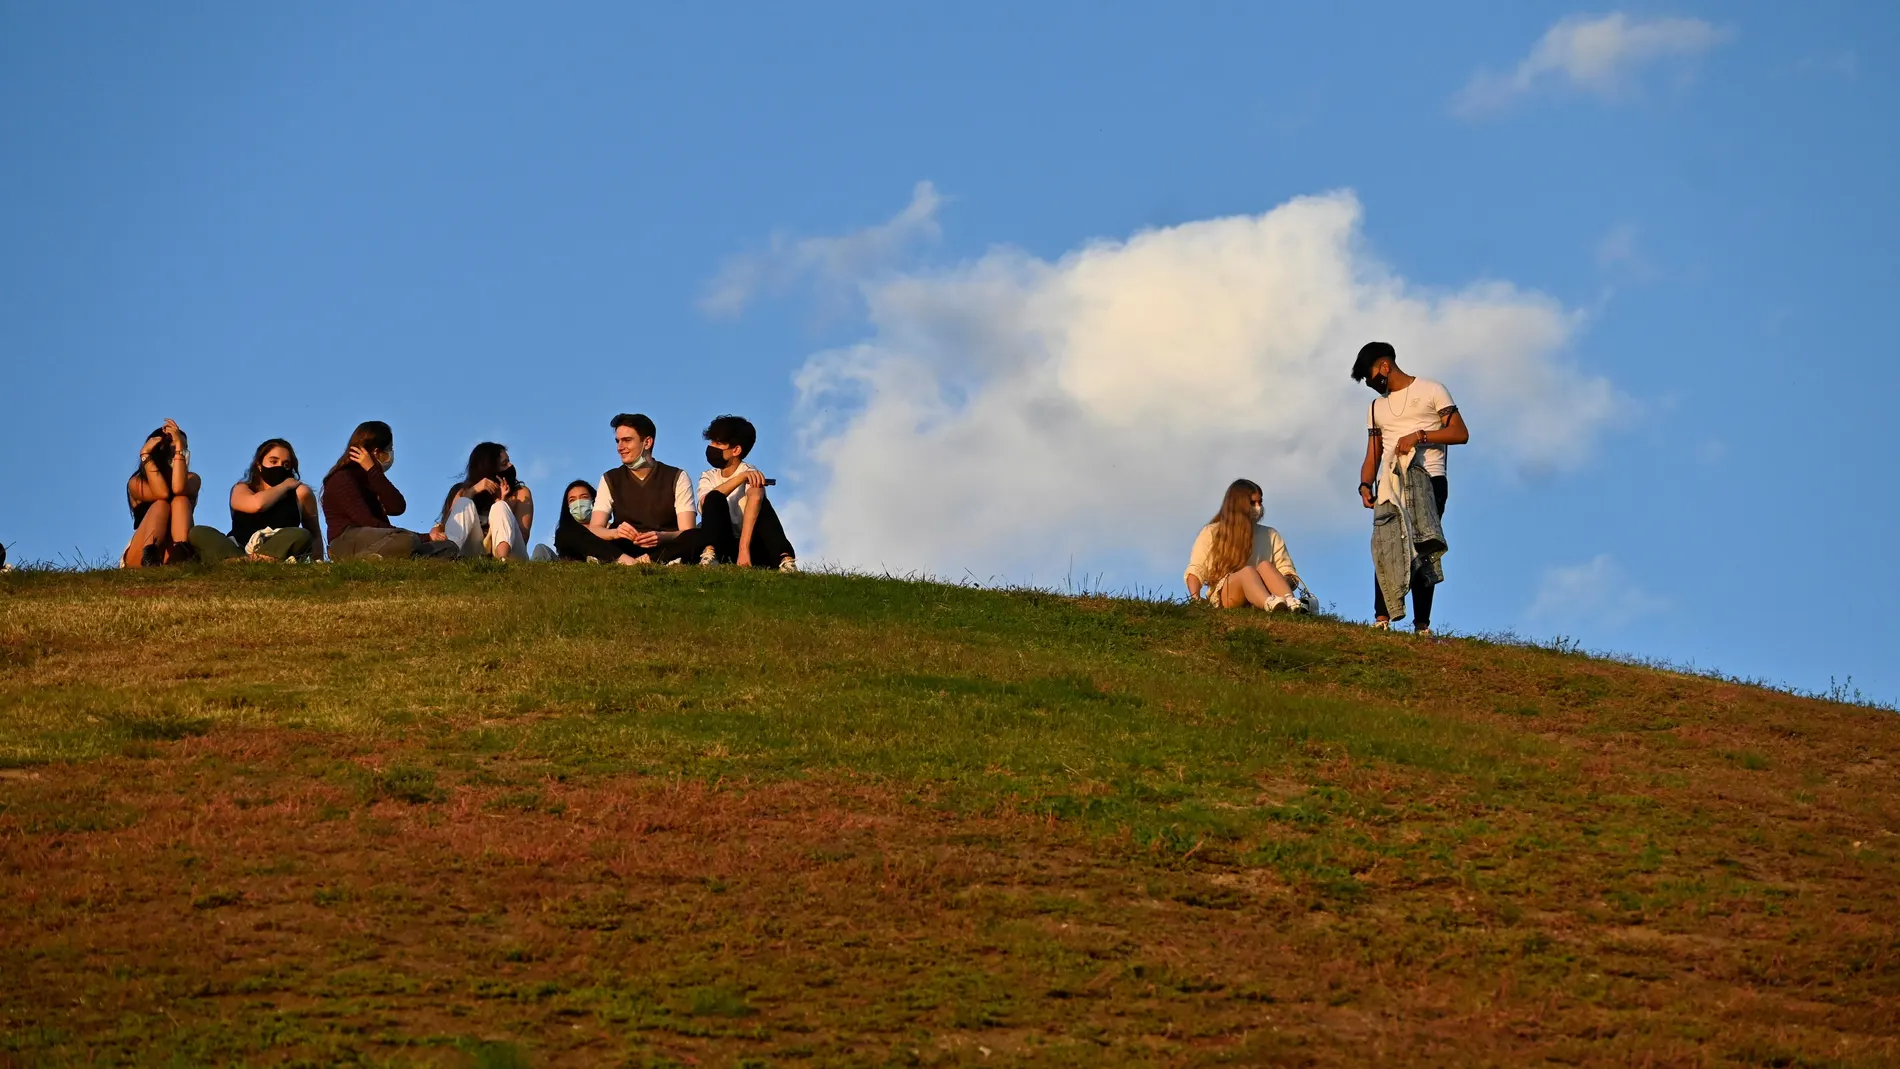 Jóvenes disfrutan de un día soleado, el Parque del Cerro del Tío Pío, en el distrito de Puente de Vallecas, Madrid.